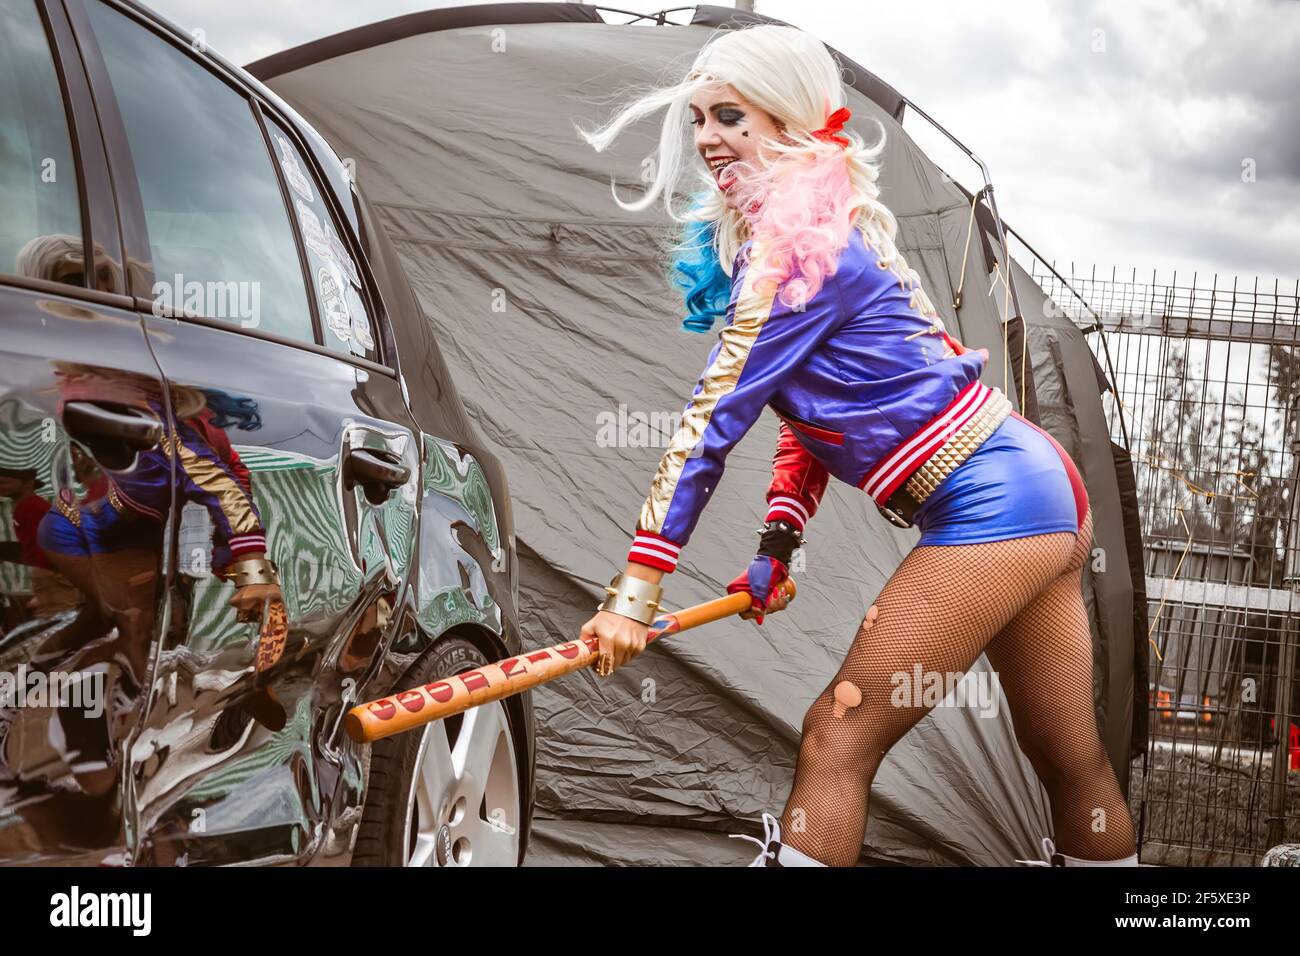 Moskau, Russland - 06. Juli 2020: Harley Quinn trifft mit einem  Baseballschläger auf ein geparktes schwarzes Auto.